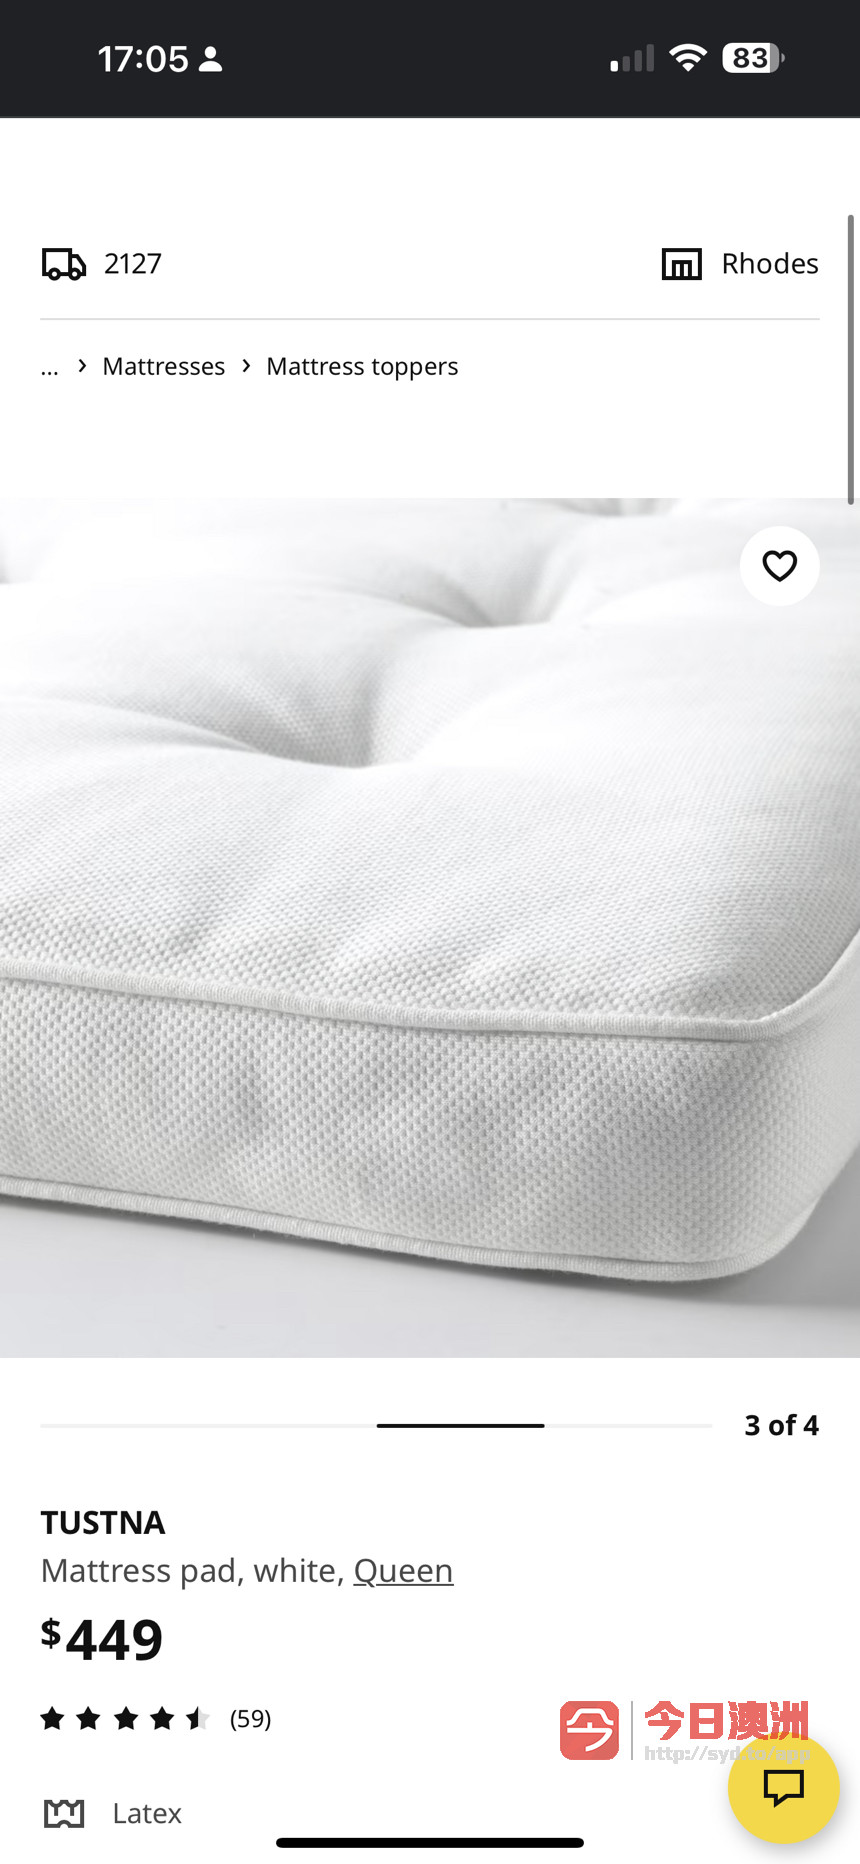 闲置Ikea乳胶床垫